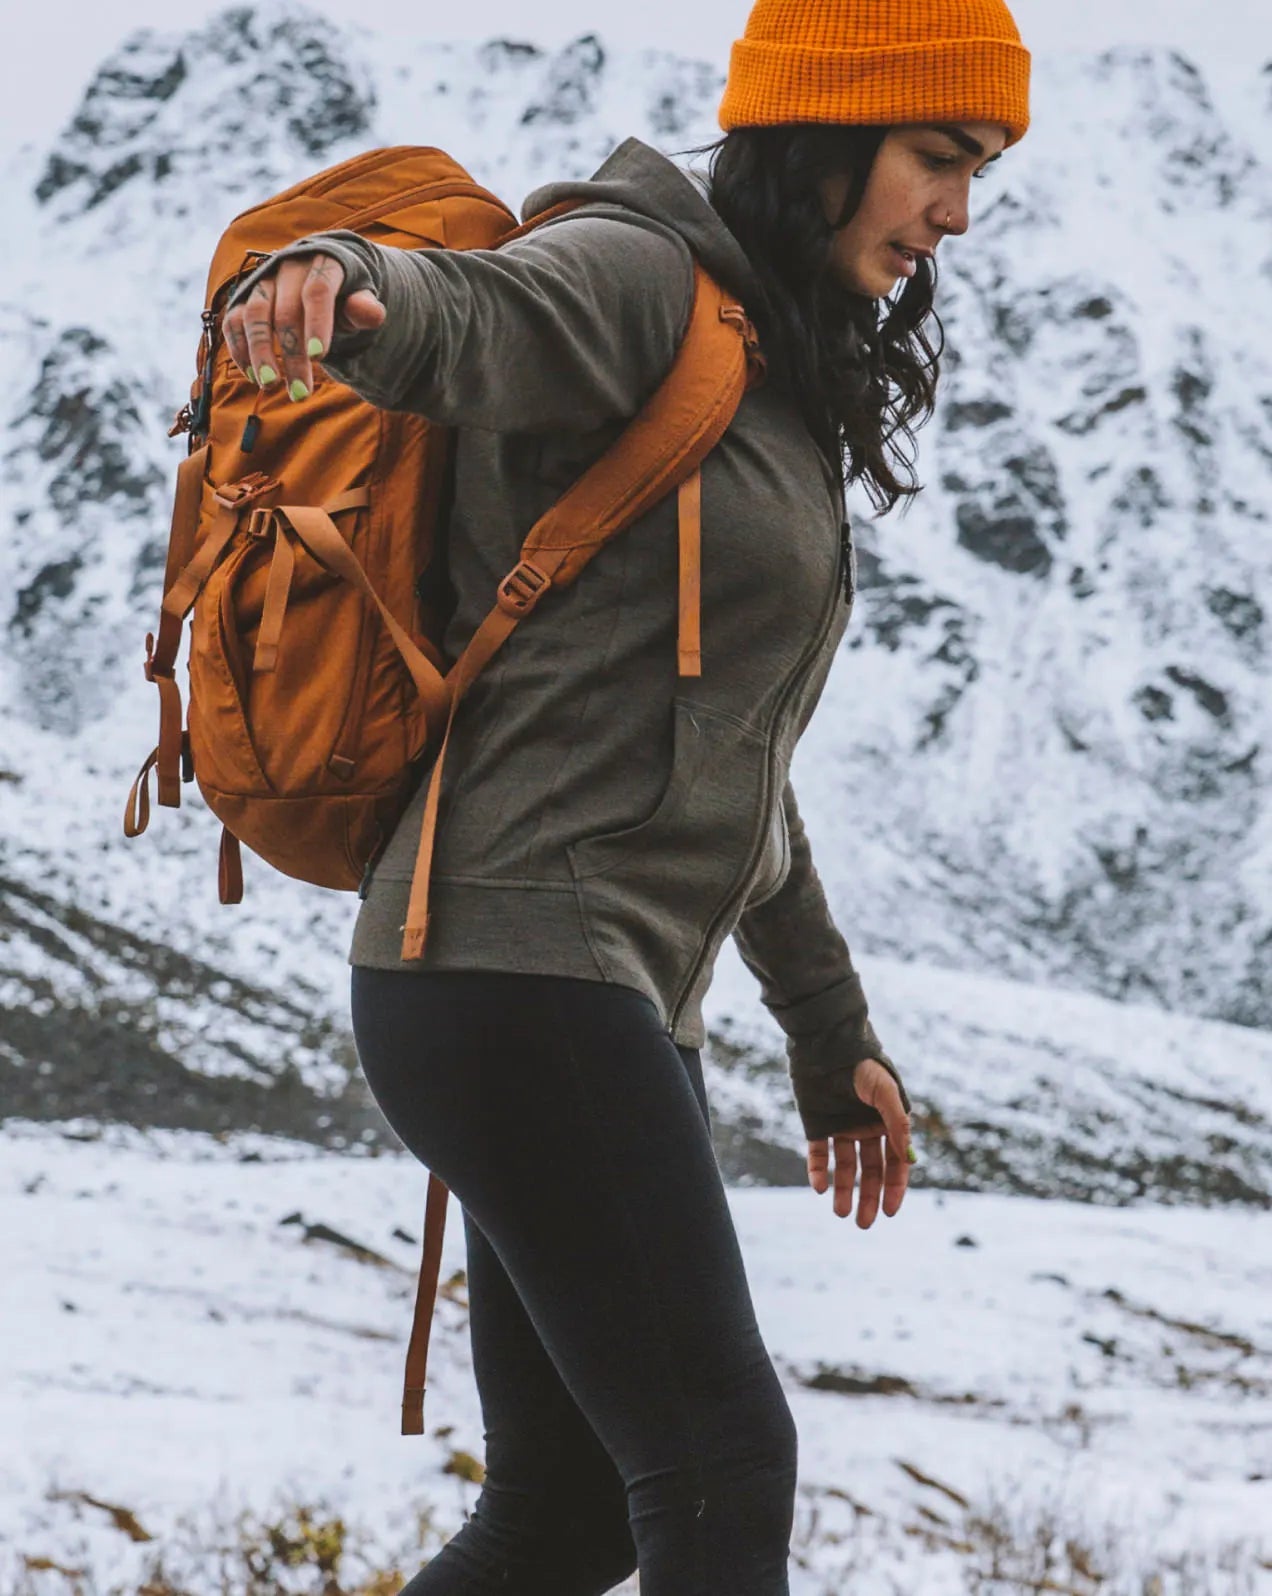 A woman wearing a green Breathe Women's Full zip in a snowy mountain